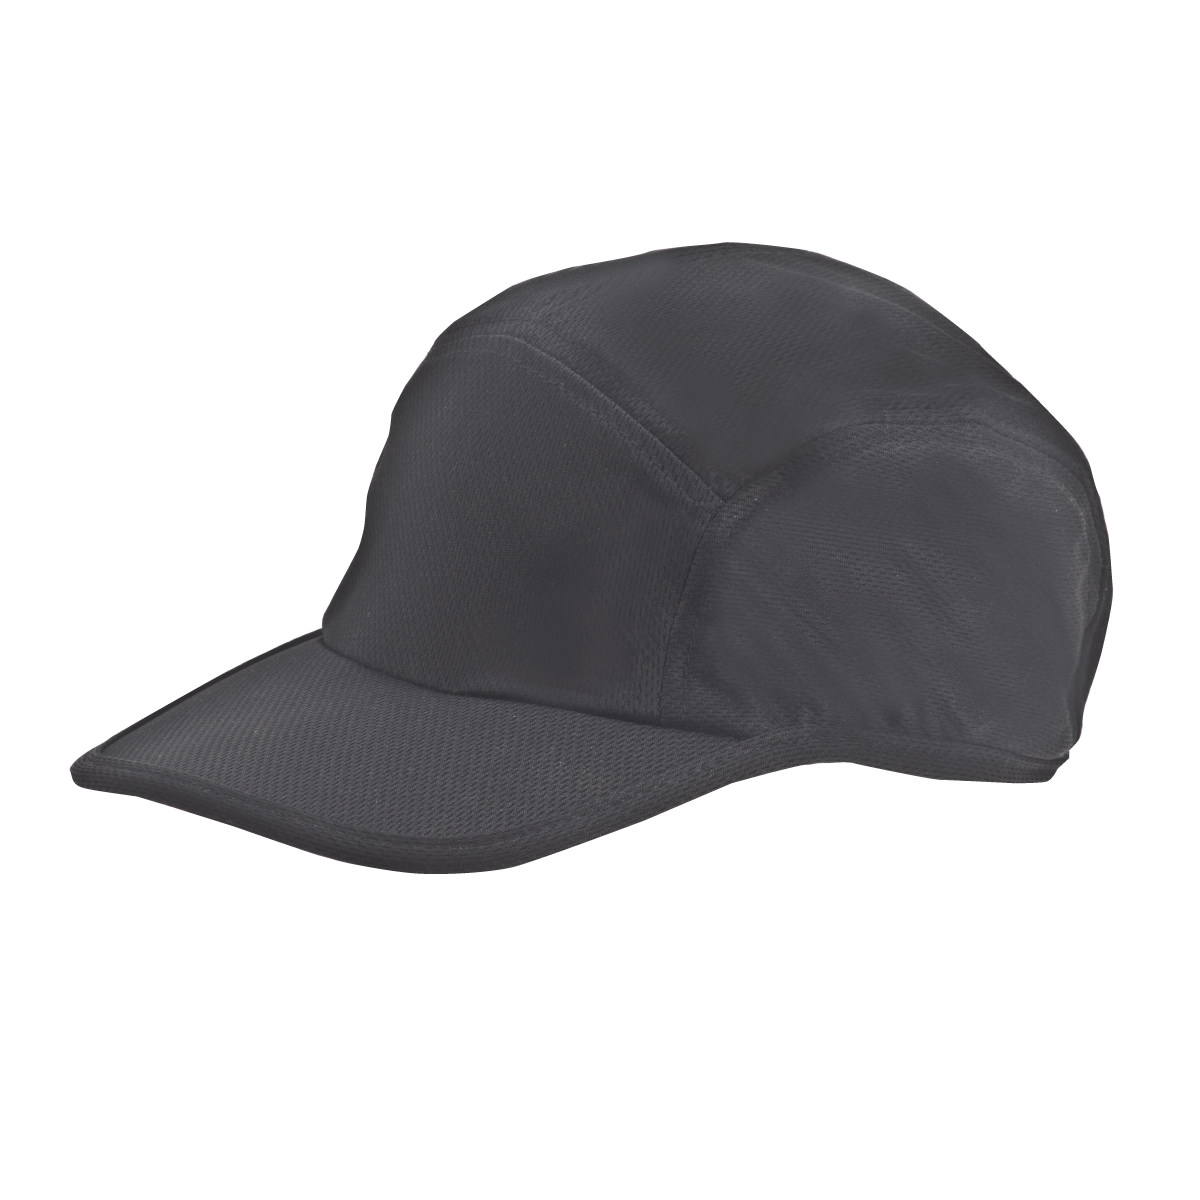 כובע מיוחד לפעילות ספורטיבית - אקסטרים